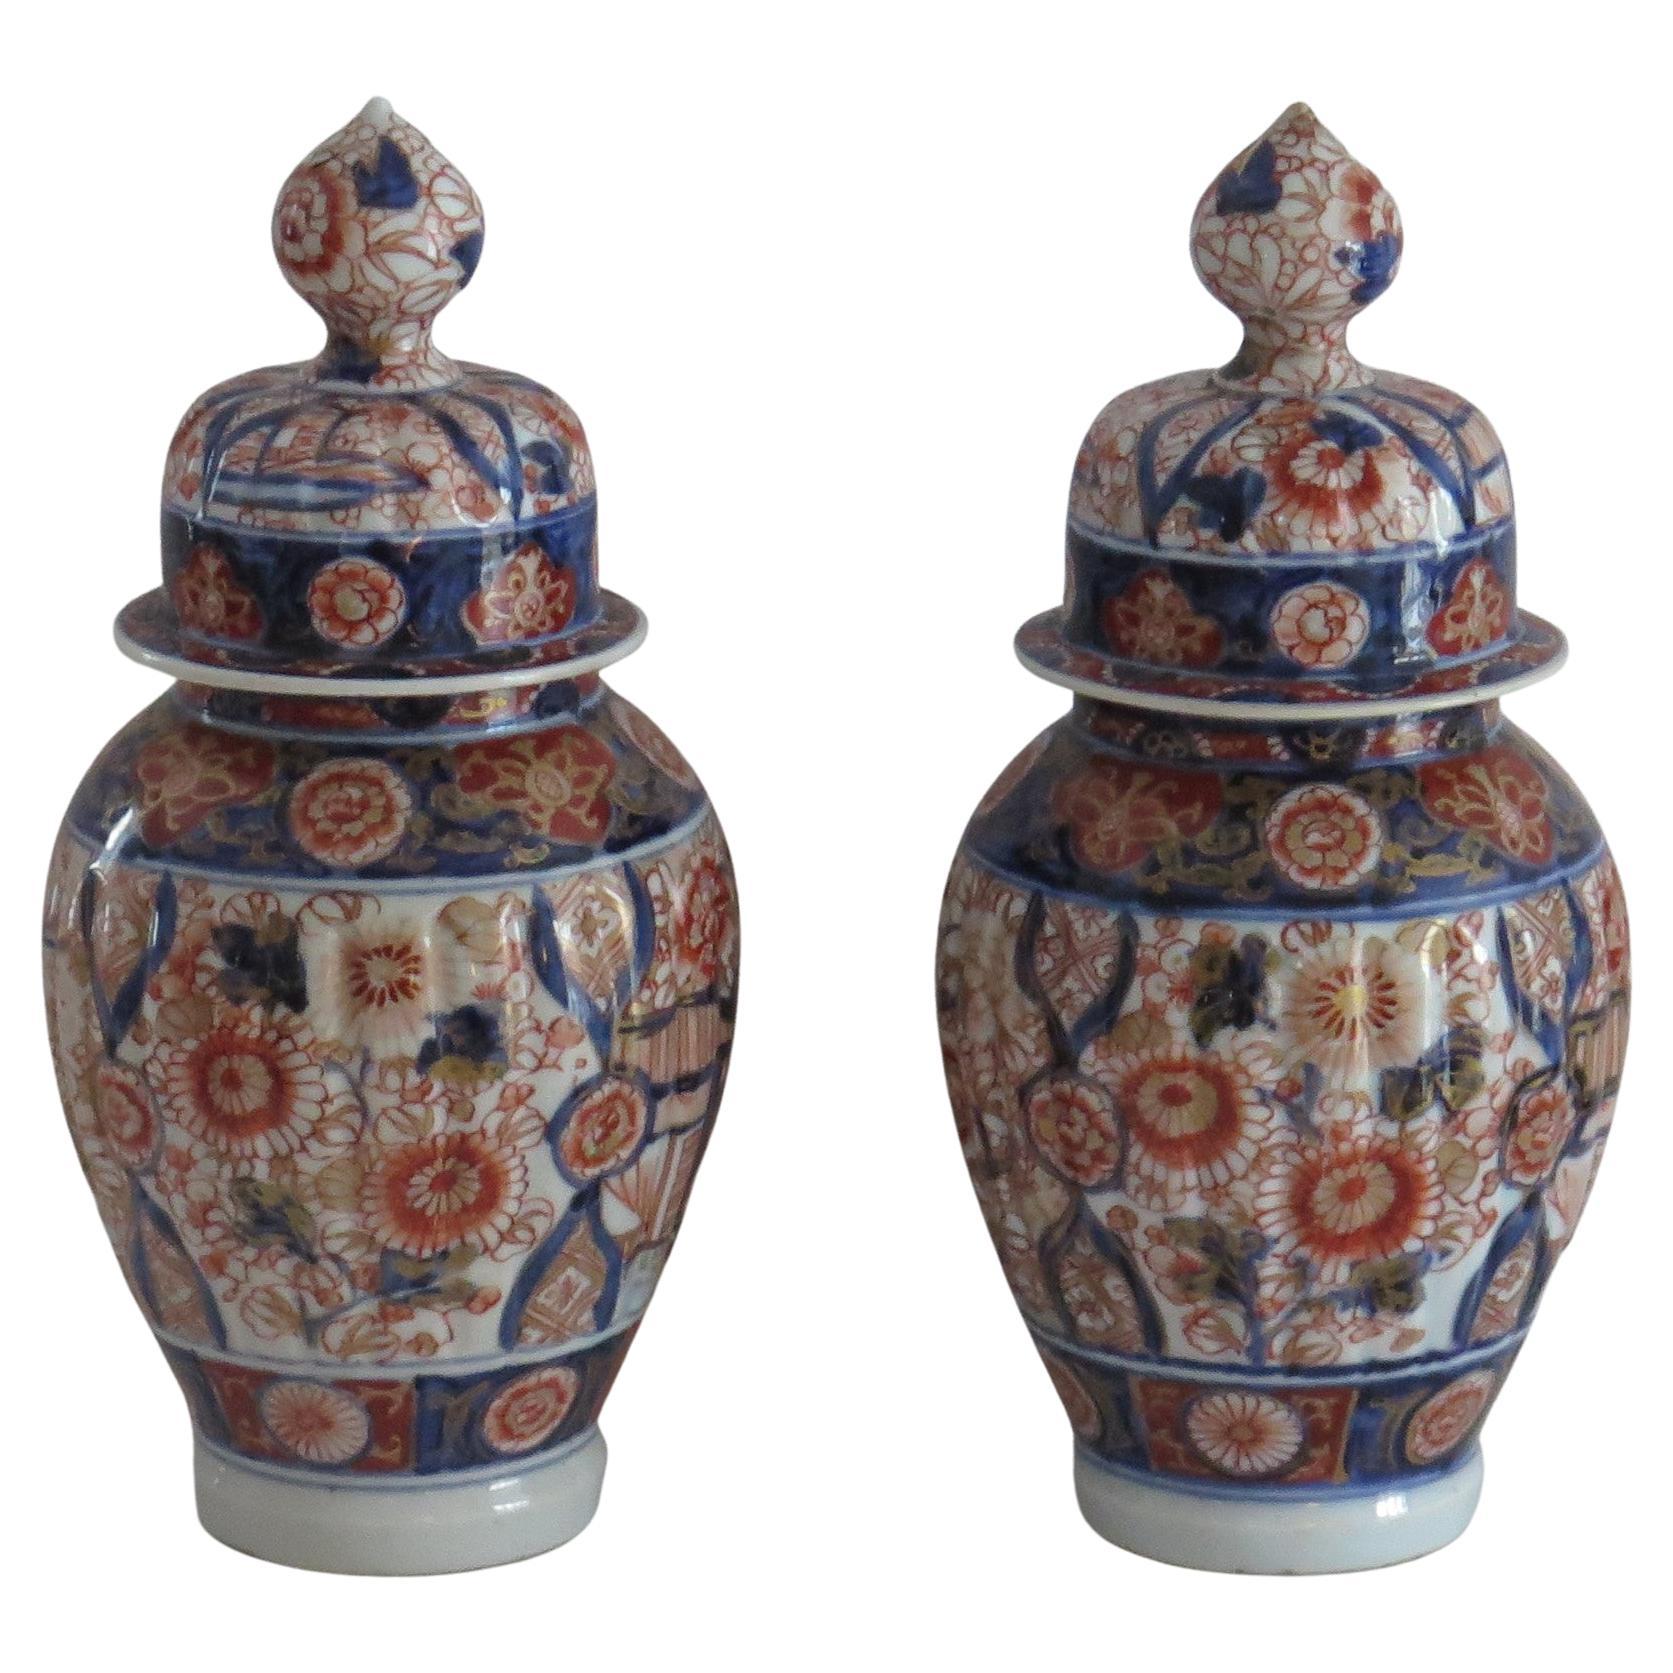 Es handelt sich um ein hochwertiges Paar sehr dekorativer vergoldeter, handemaillierter japanischer Porzellan-Deckelvasen, die wir auf die Edo-Periode des 19. Jahrhunderts, etwa 1830, datieren.

Jede Vase hat eine Balusterform mit offenem Hals und